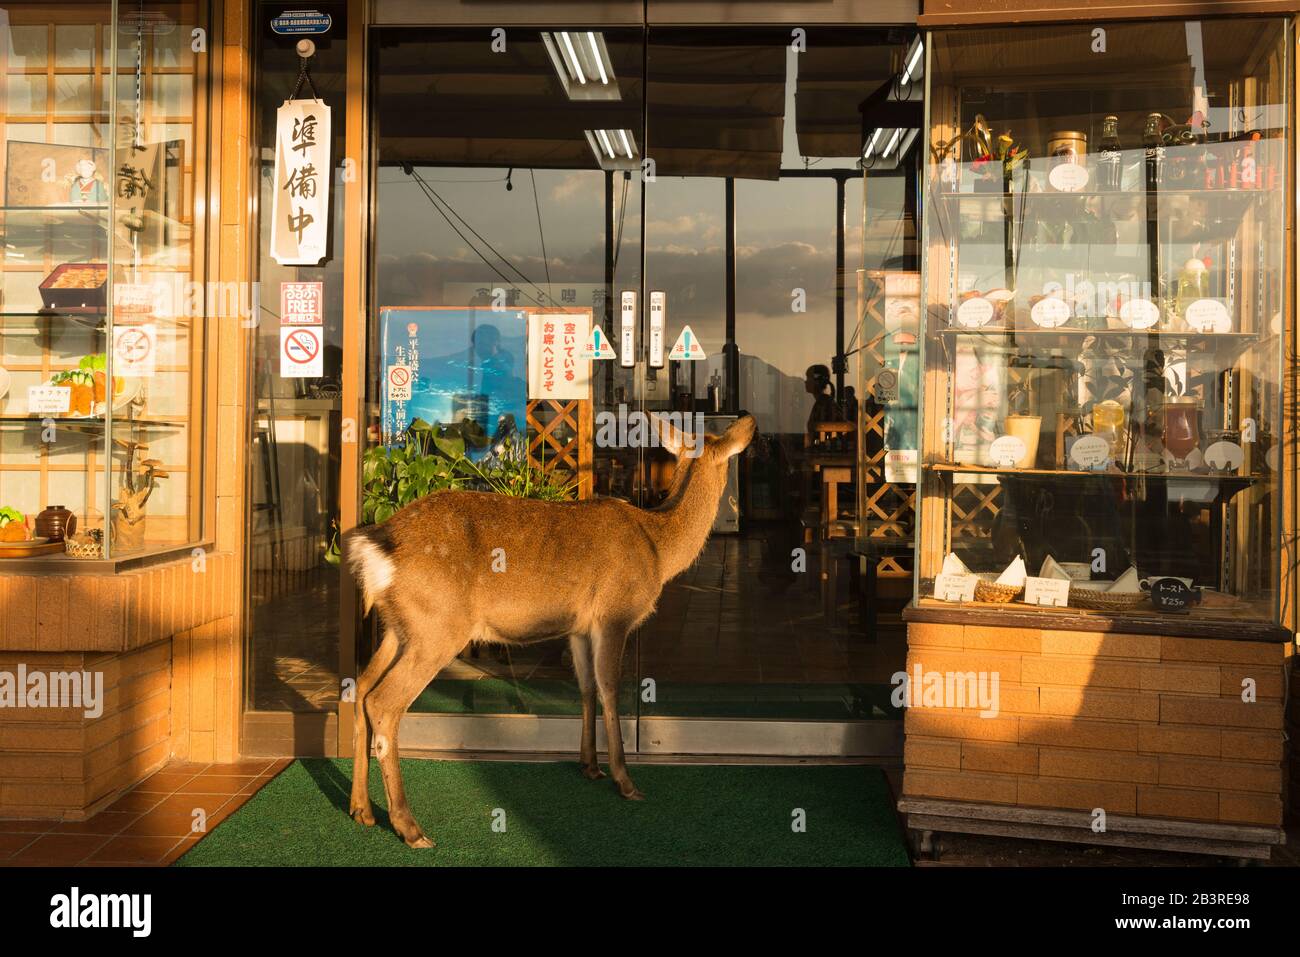 Comic-Szene mit bewohntem, gesichertem Hirsch (auch bekannt als Sika-Hirsch, japanische Rehe), die in ein geschlossenes Restaurant, Miyajima-Insel, Japan, blickt Stockfoto